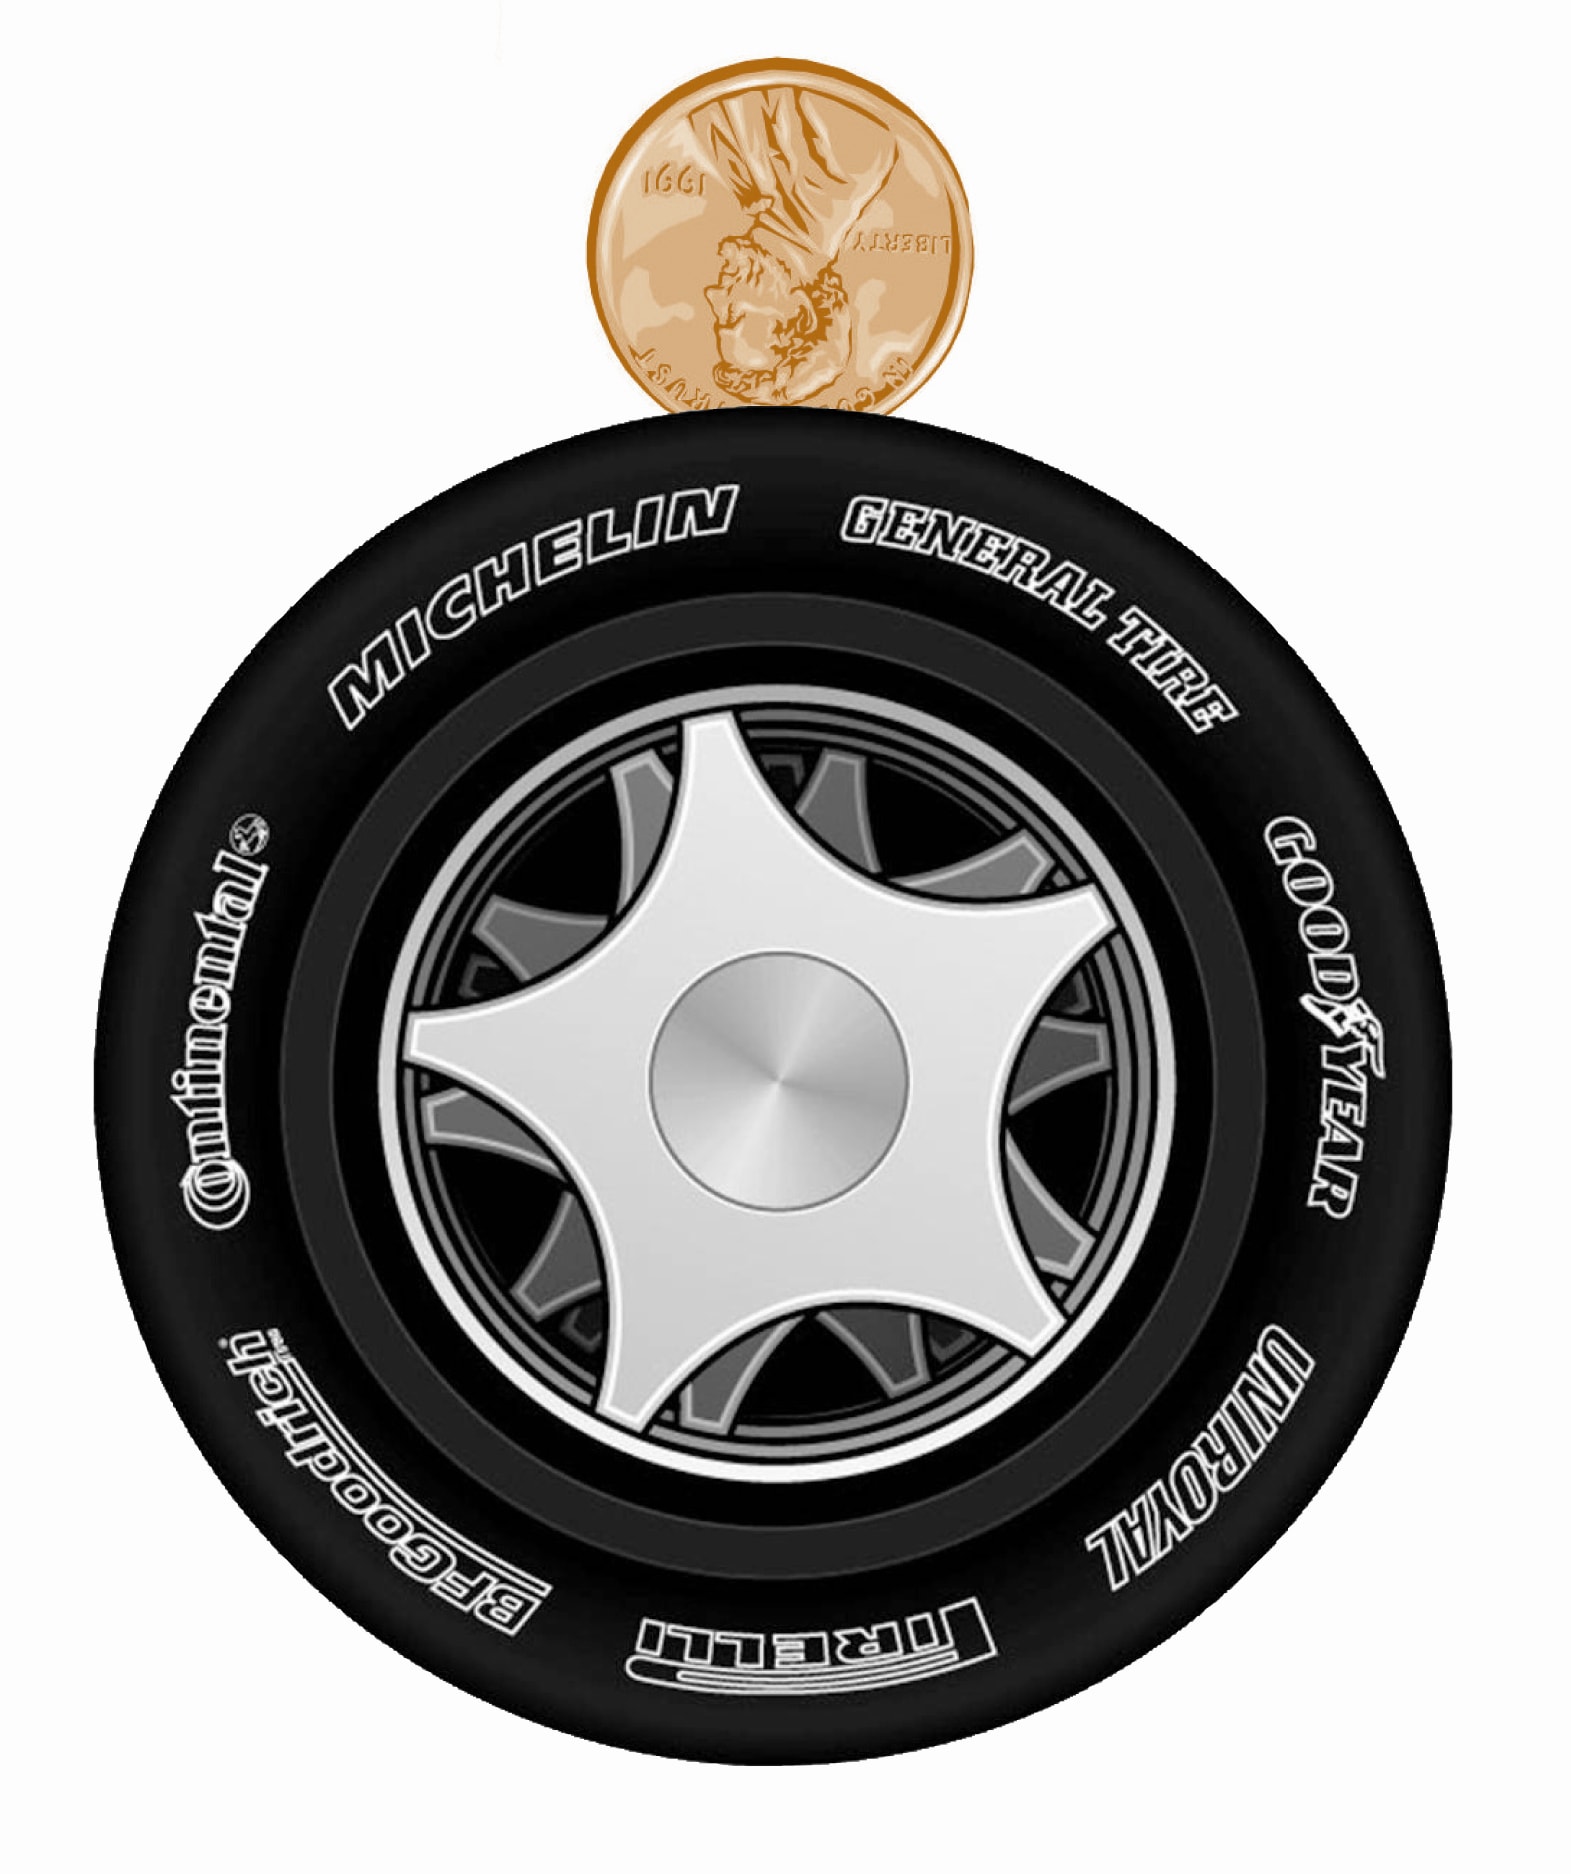 Ford dealer tires rebate #6